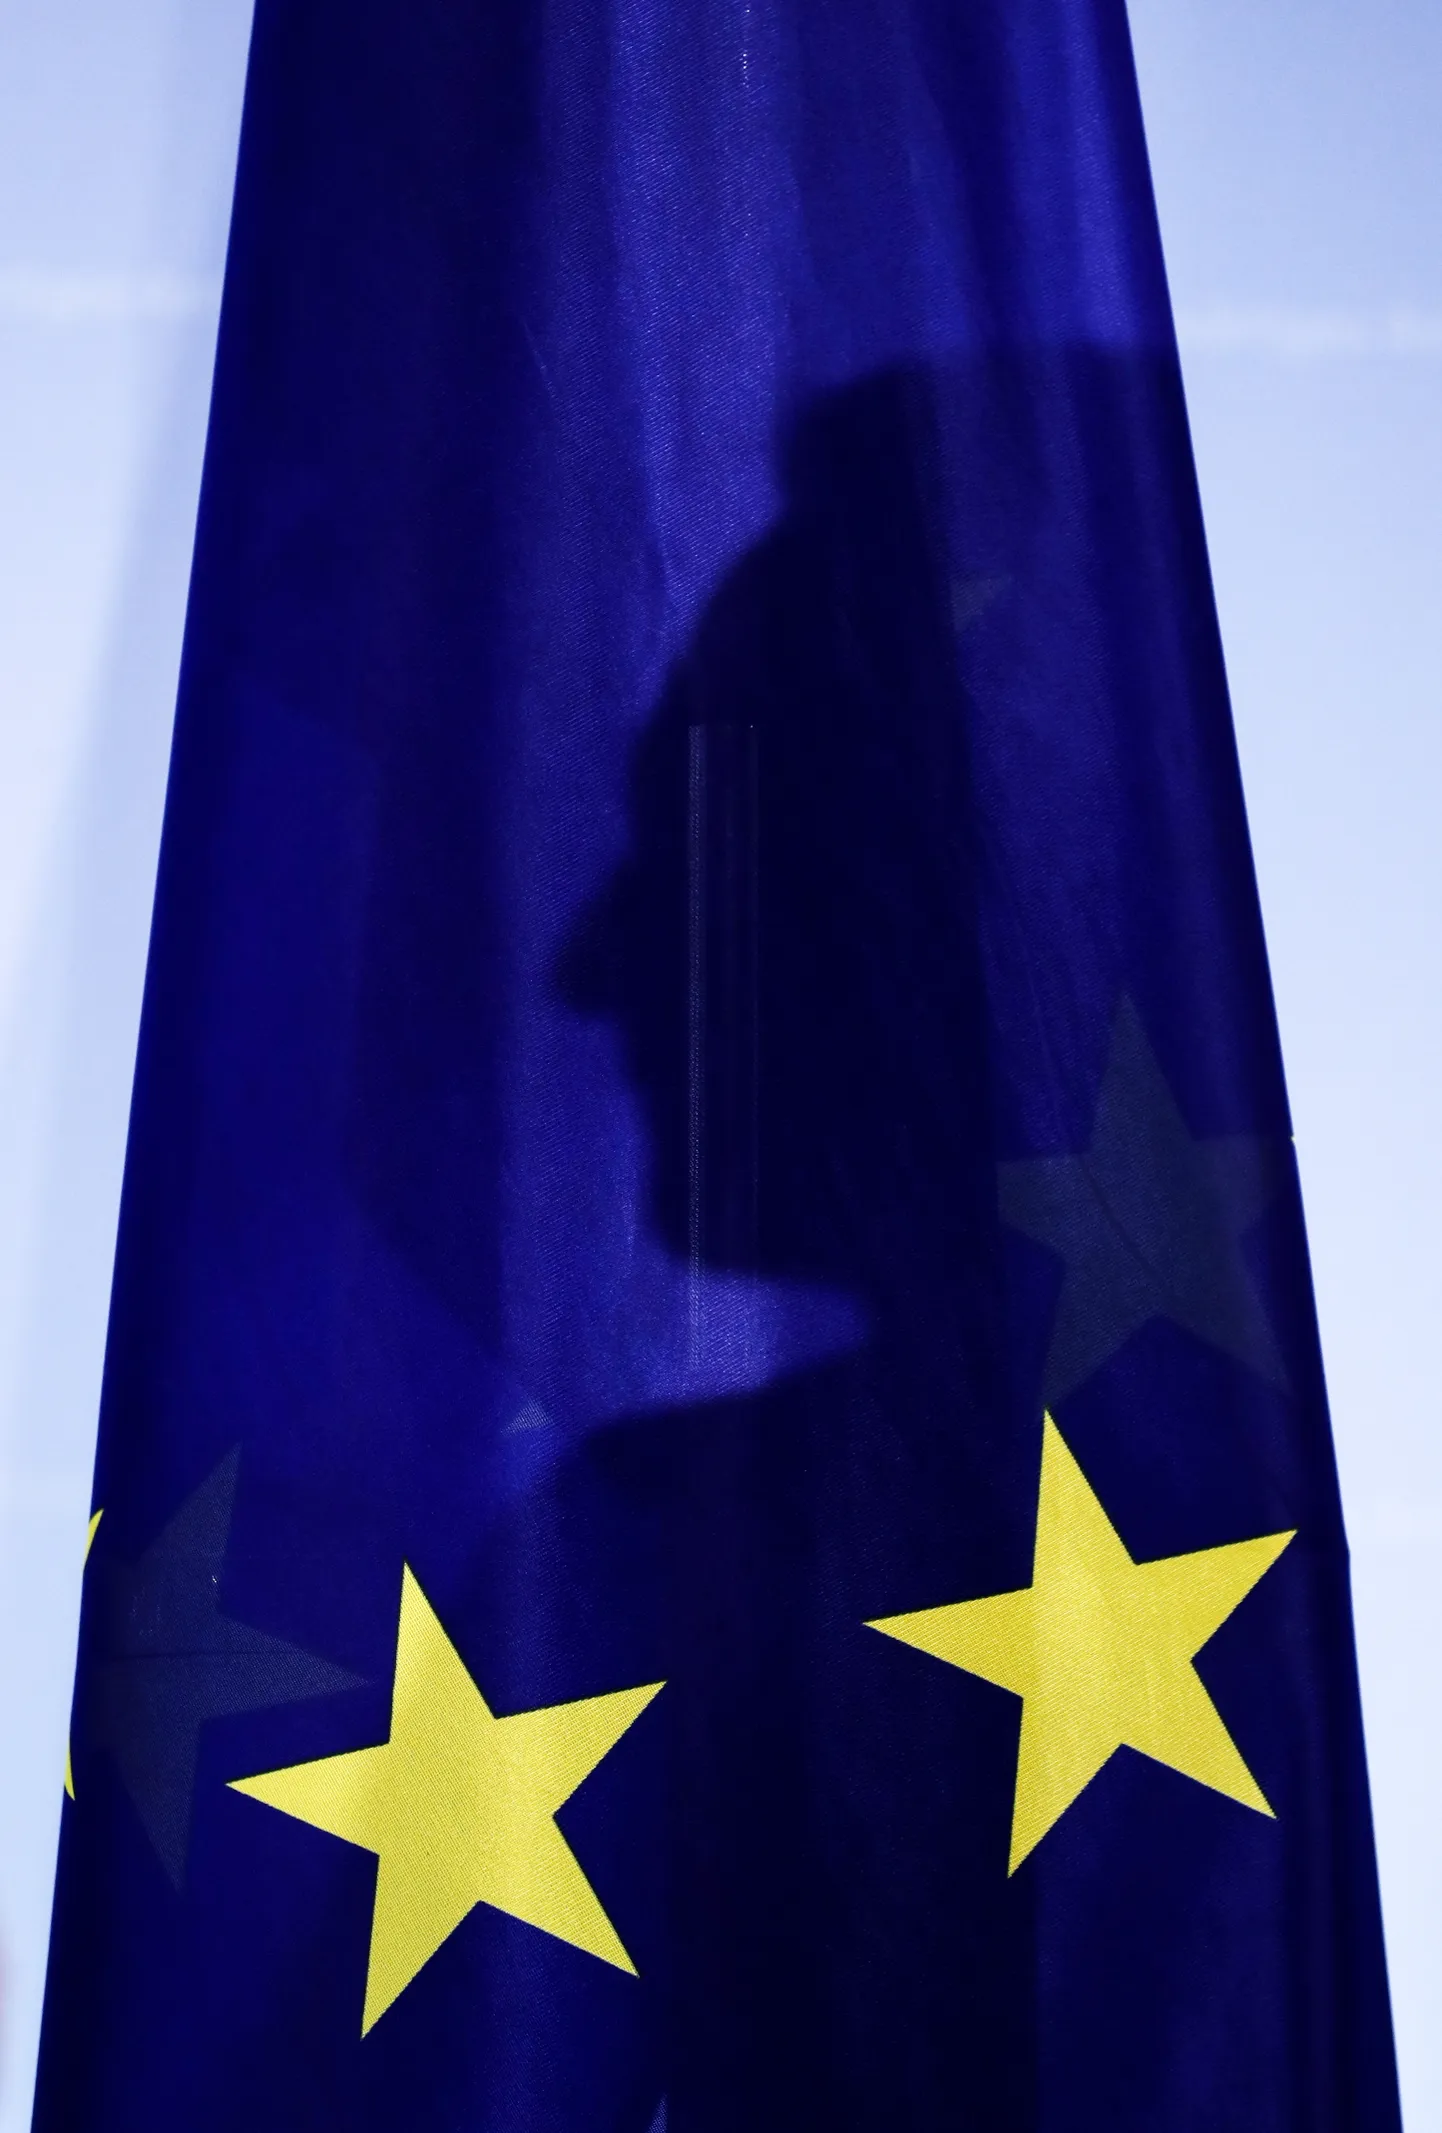 Saksa välisminister Heiko Maas Euroopa Liidu lipu taga.